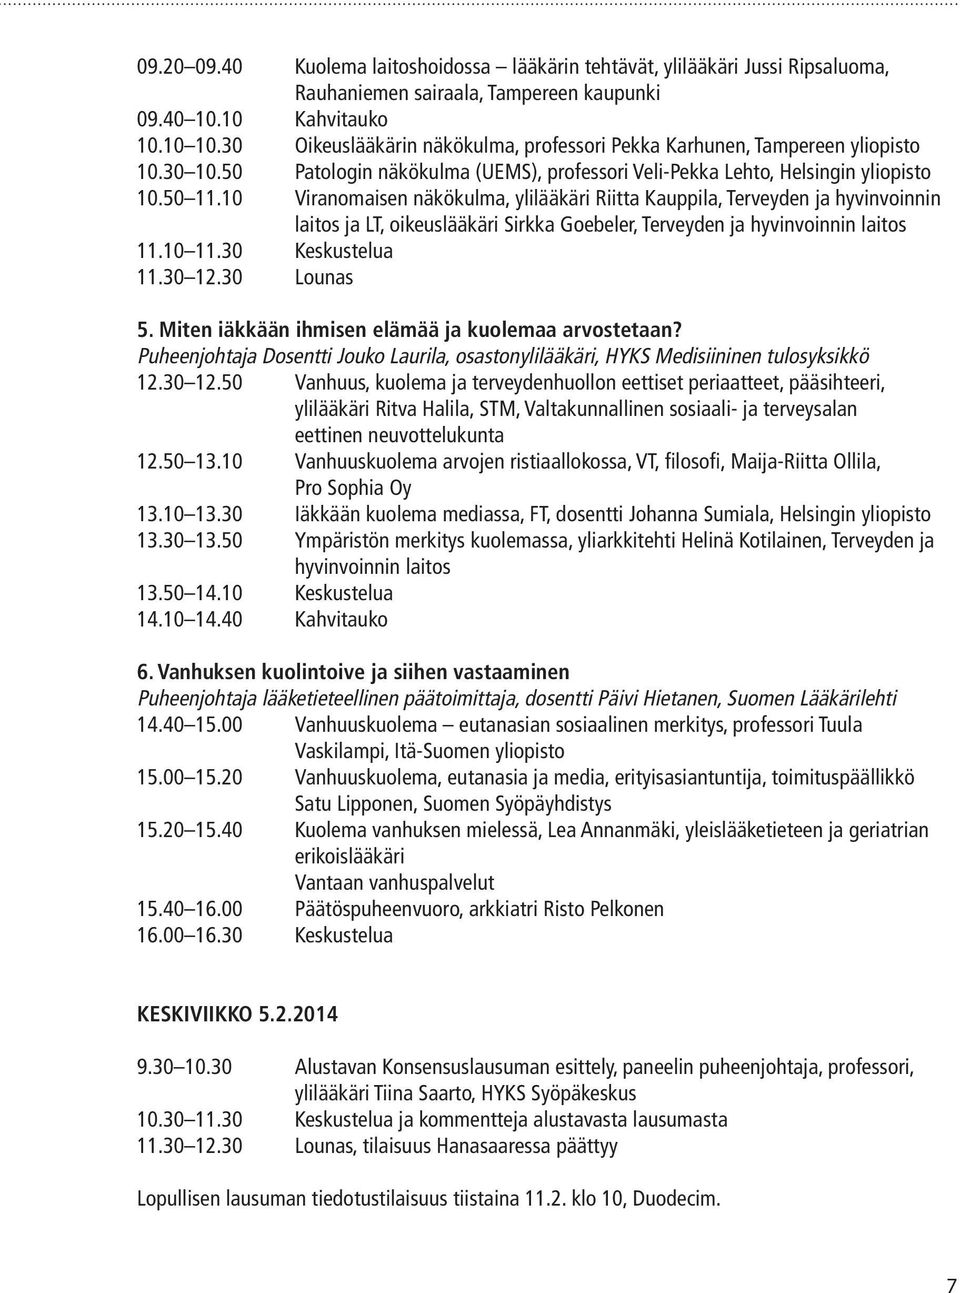 10 Viranomaisen näkökulma, ylilääkäri Riitta Kauppila, Terveyden ja hyvinvoinnin laitos ja LT, oikeuslääkäri Sirkka Goebeler, Terveyden ja hyvinvoinnin laitos 11.10 11.30 Keskustelua 11.30 12.